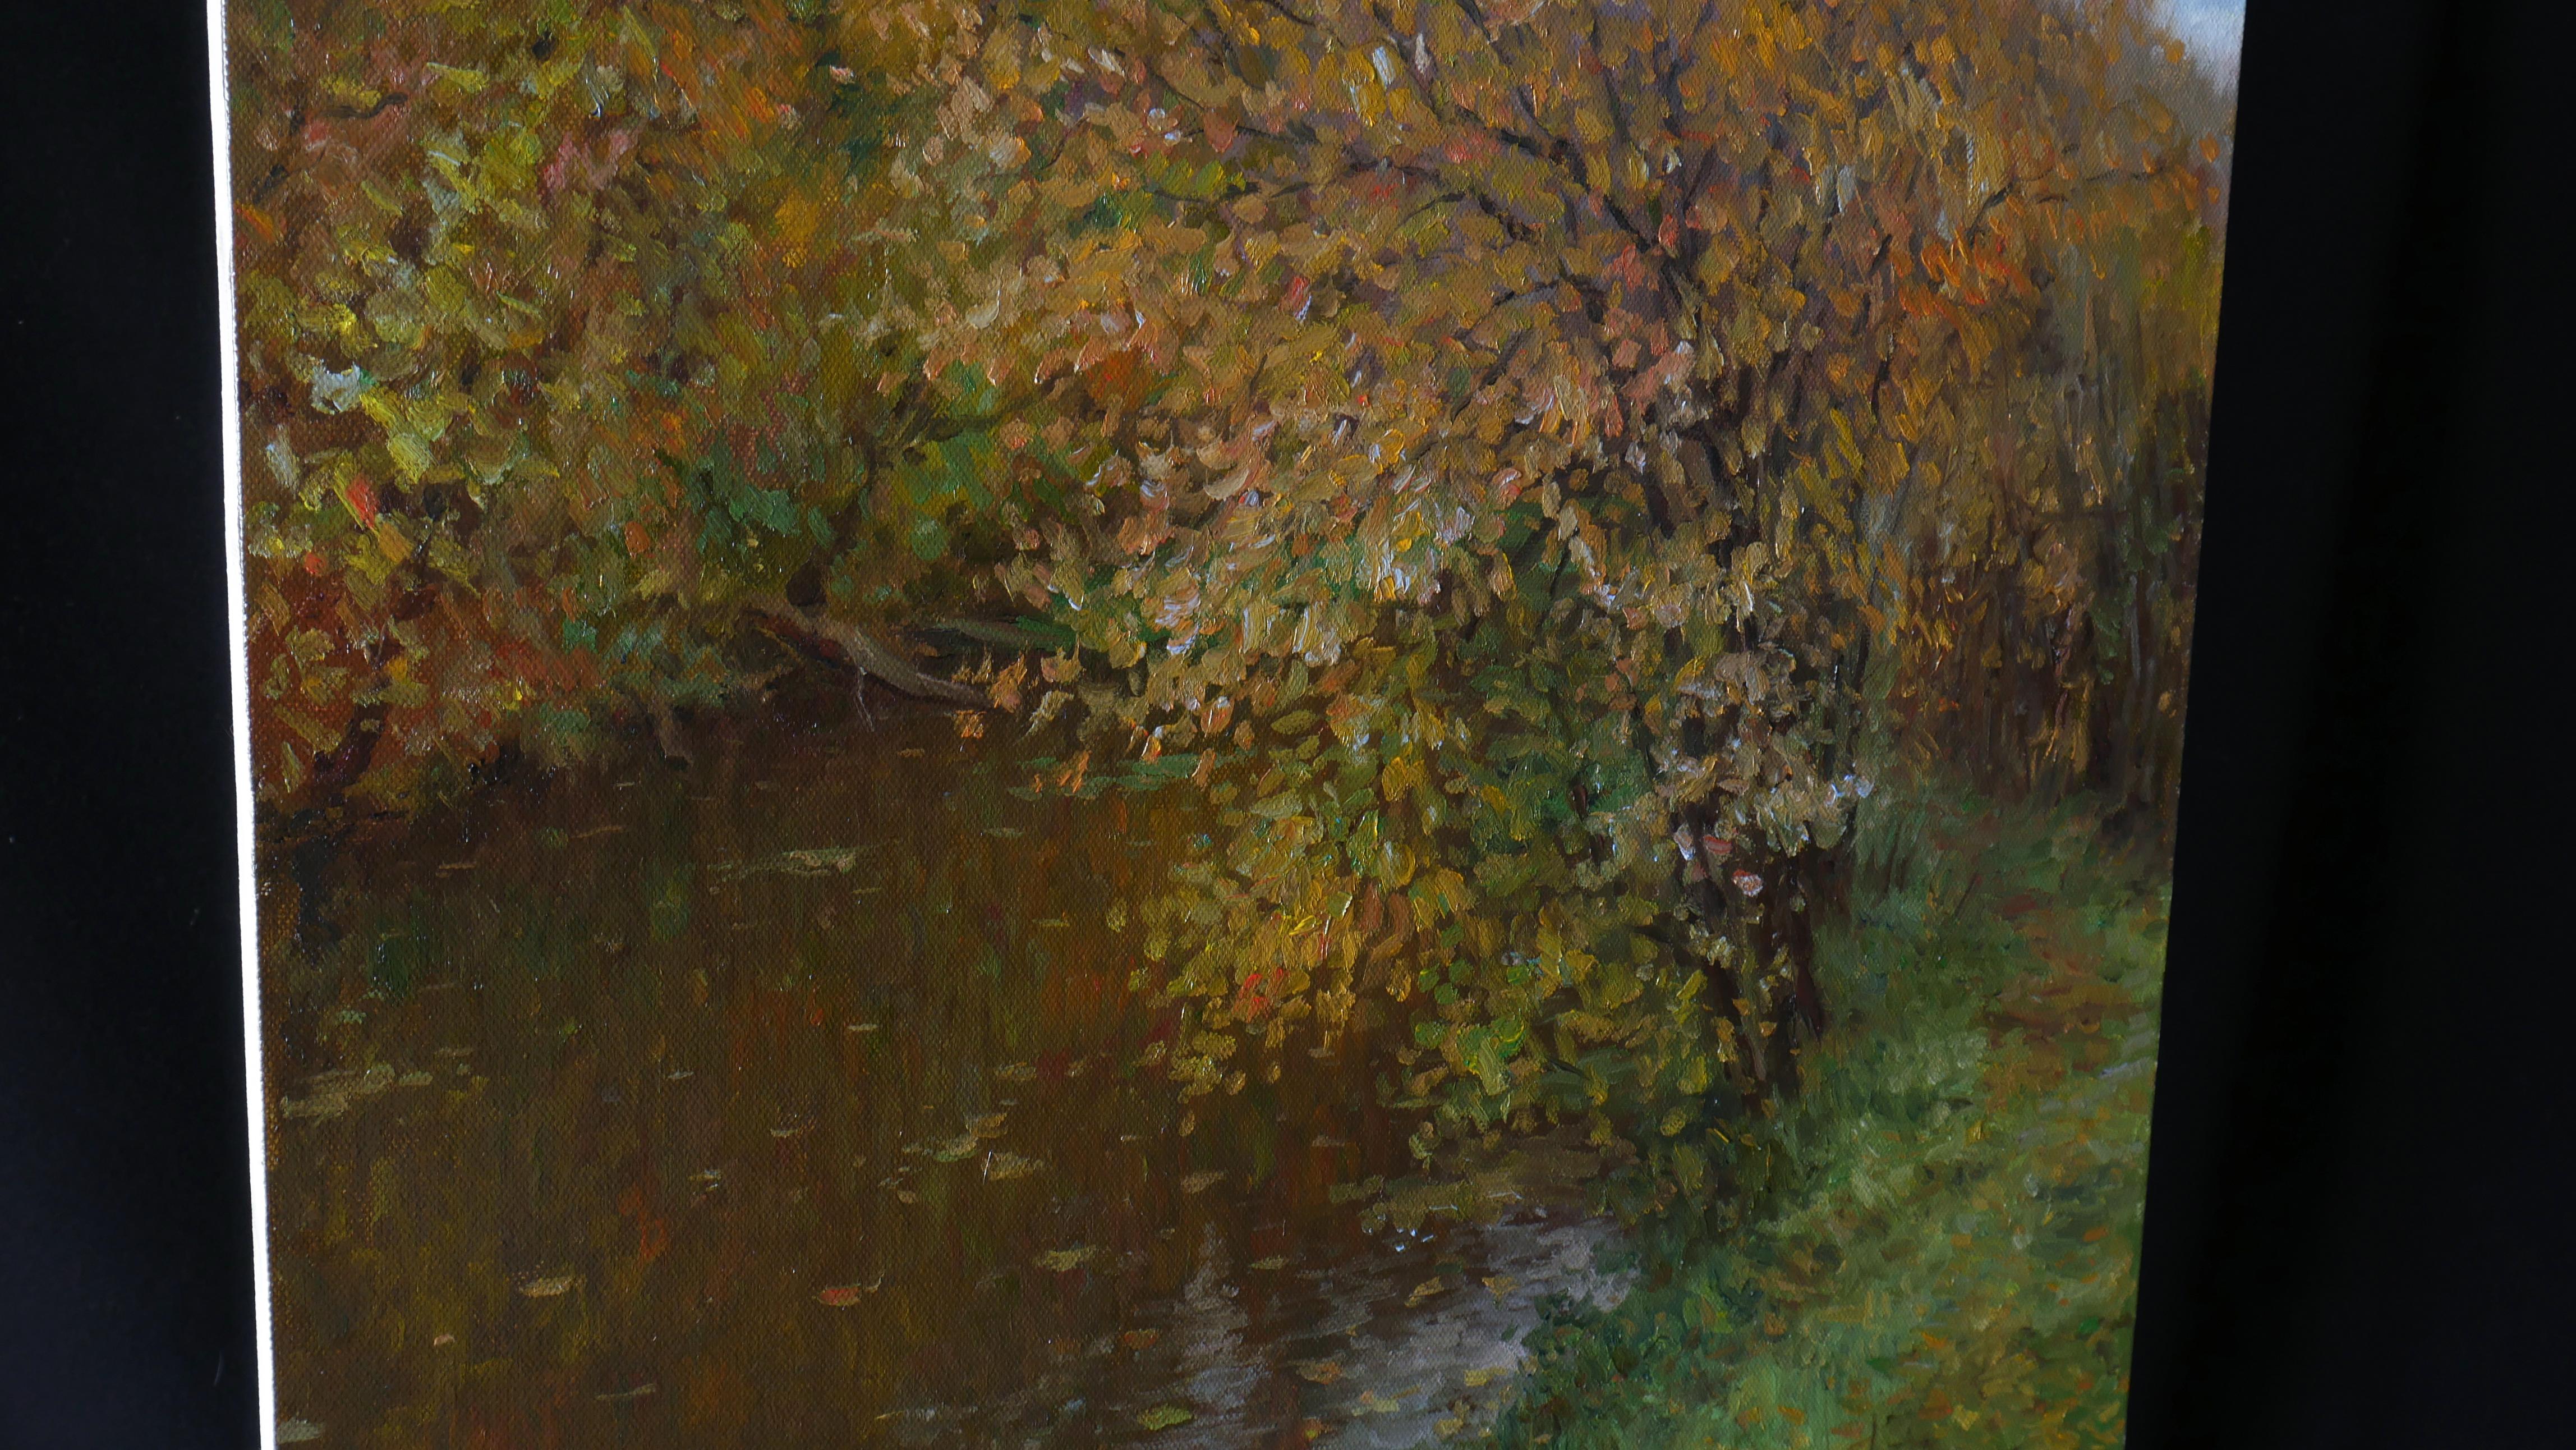 Der goldene Herbst ist eine der Lieblingsjahreszeiten von Nikolay. Die Künstlerin lässt sich immer wieder vom herbstlichen Wasser inspirieren. Das Schweben auf den Blättern des Flusses vermittelt ein Gefühl von Frieden und Ruhe.

Das Bild ist von